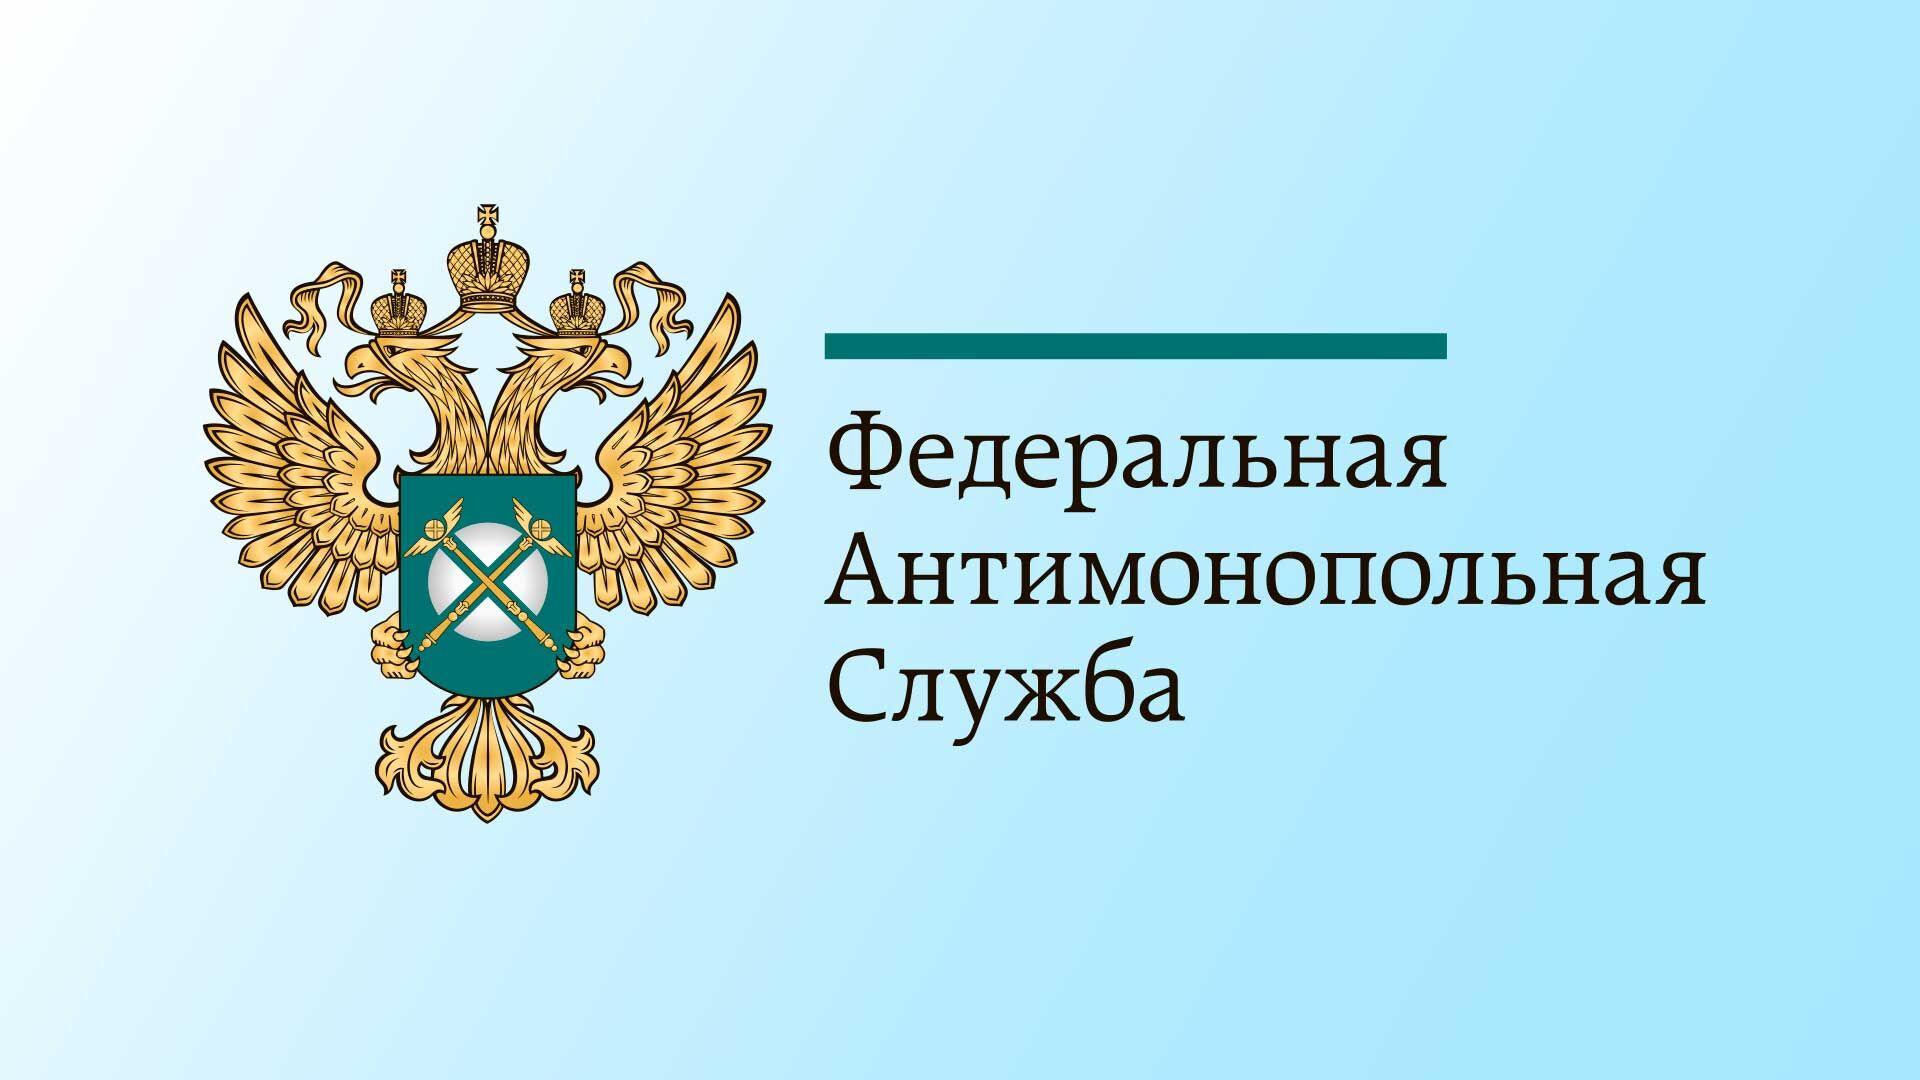 Московское областное УФАС России выявило нарушение при проведении закупки в городском округе Кашира